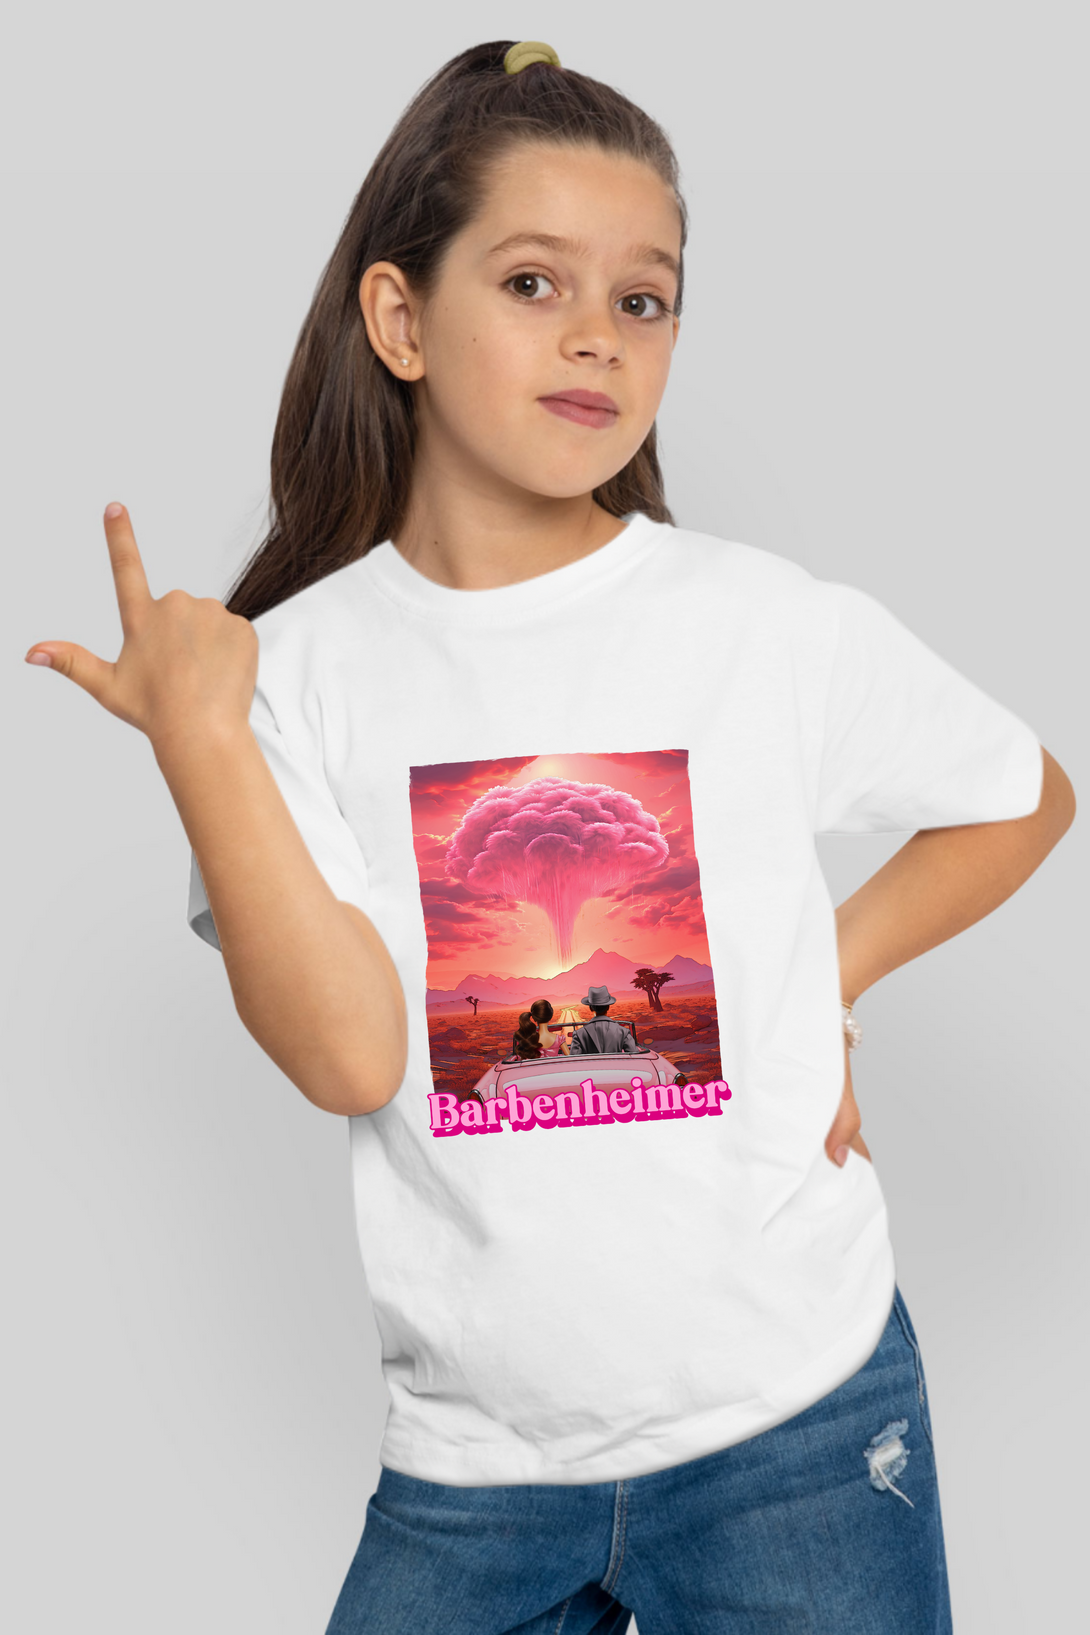 Barbienheimer Printed T-Shirt For Girl - WowWaves - 7